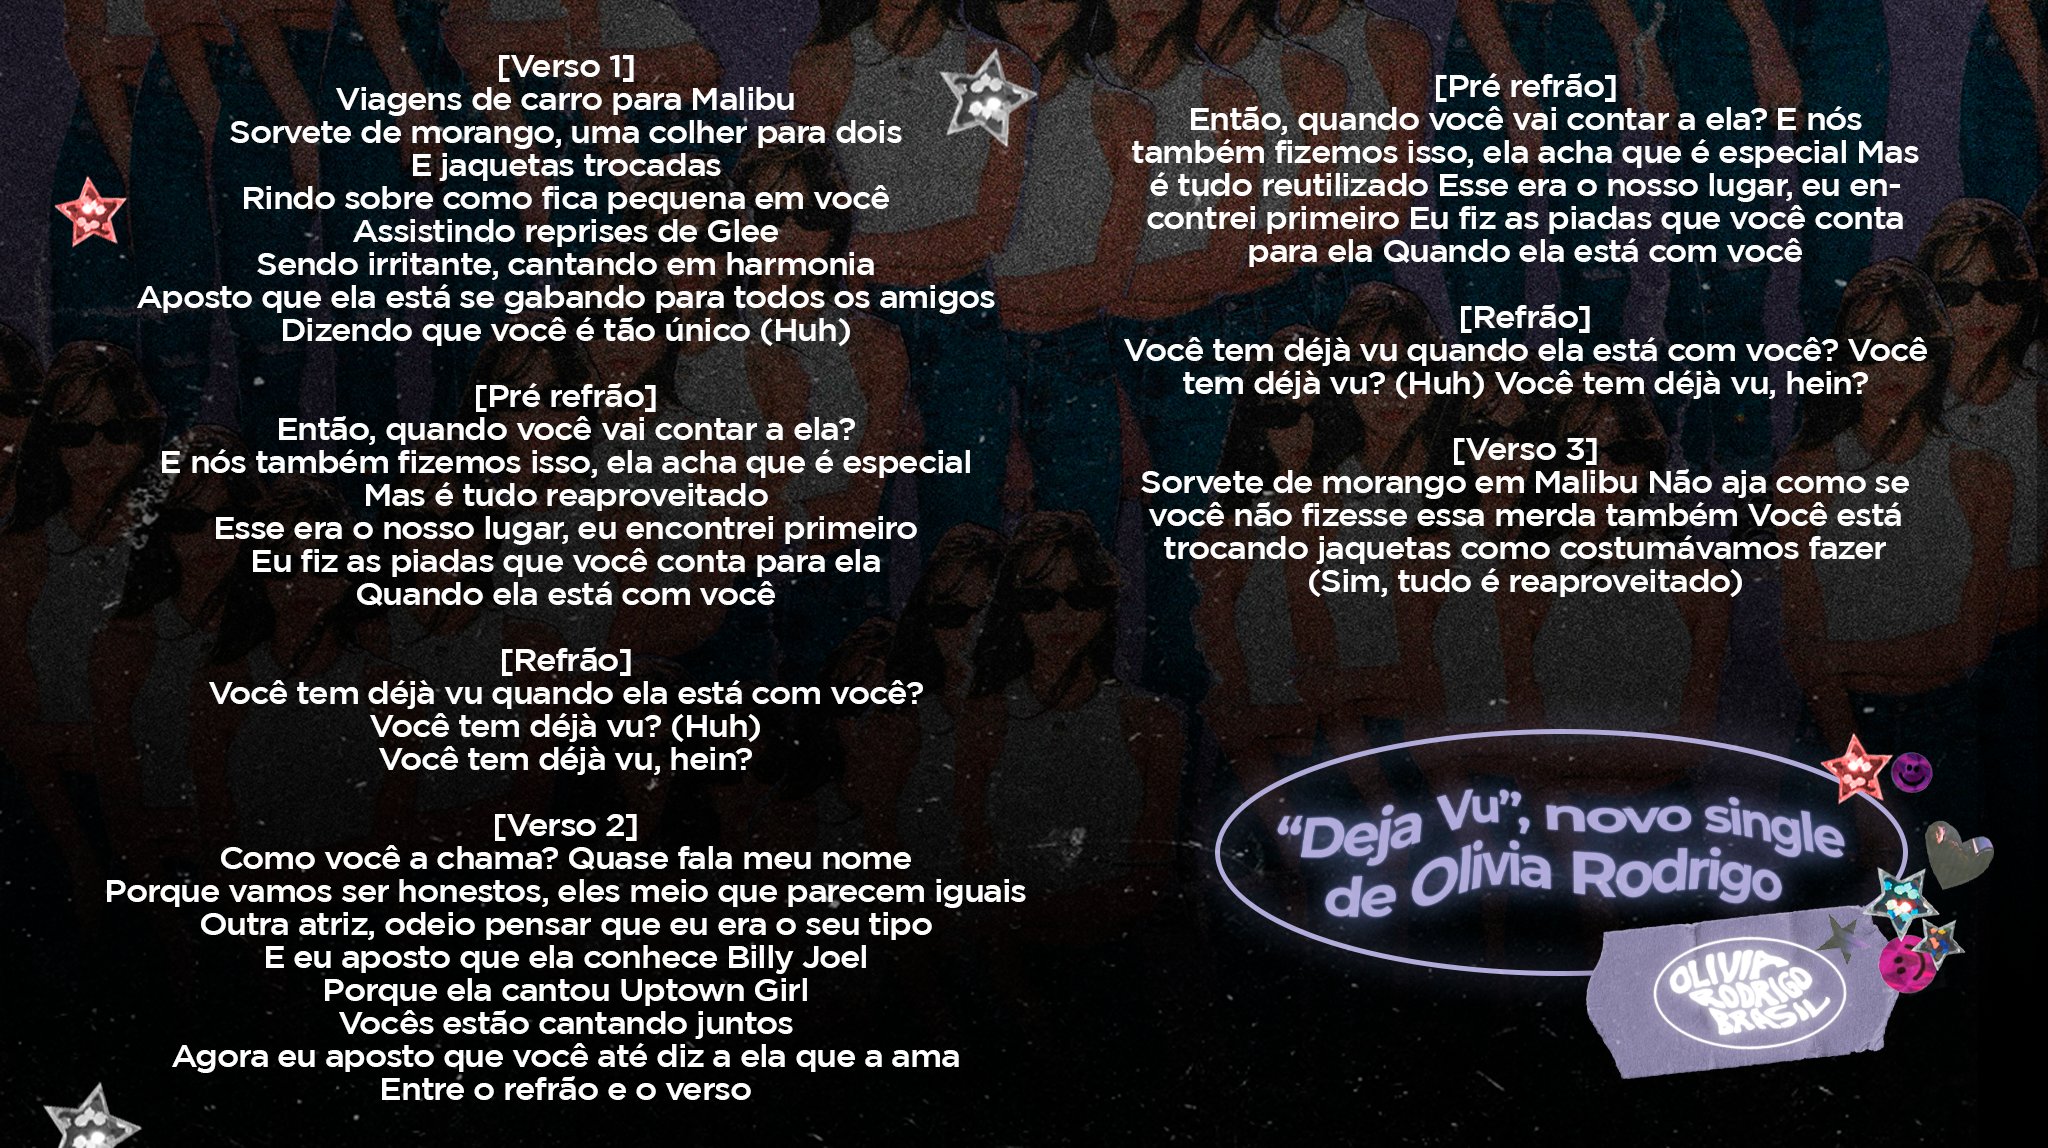 Olivia Rodrigo Brasil on X: Confira a letra e tradução da faixa